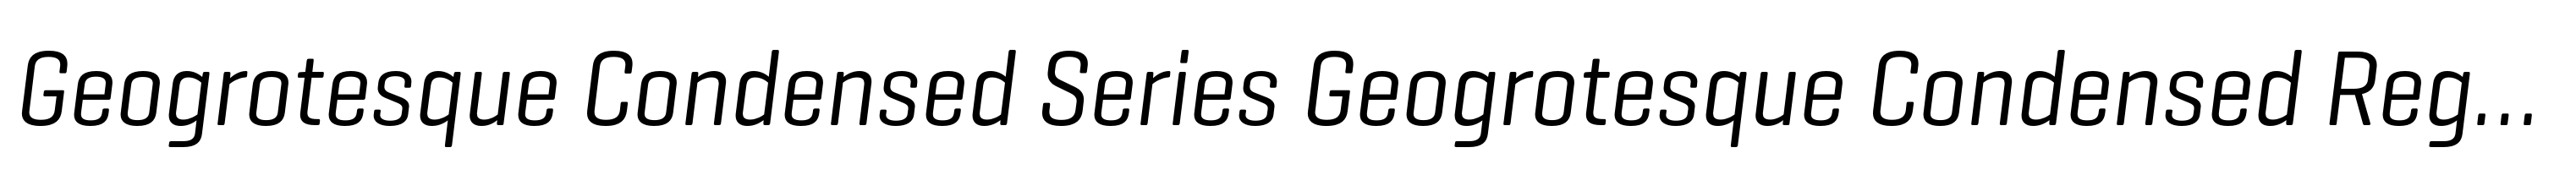 Geogrotesque Condensed Series Geogrotesque Condensed Regular Italic